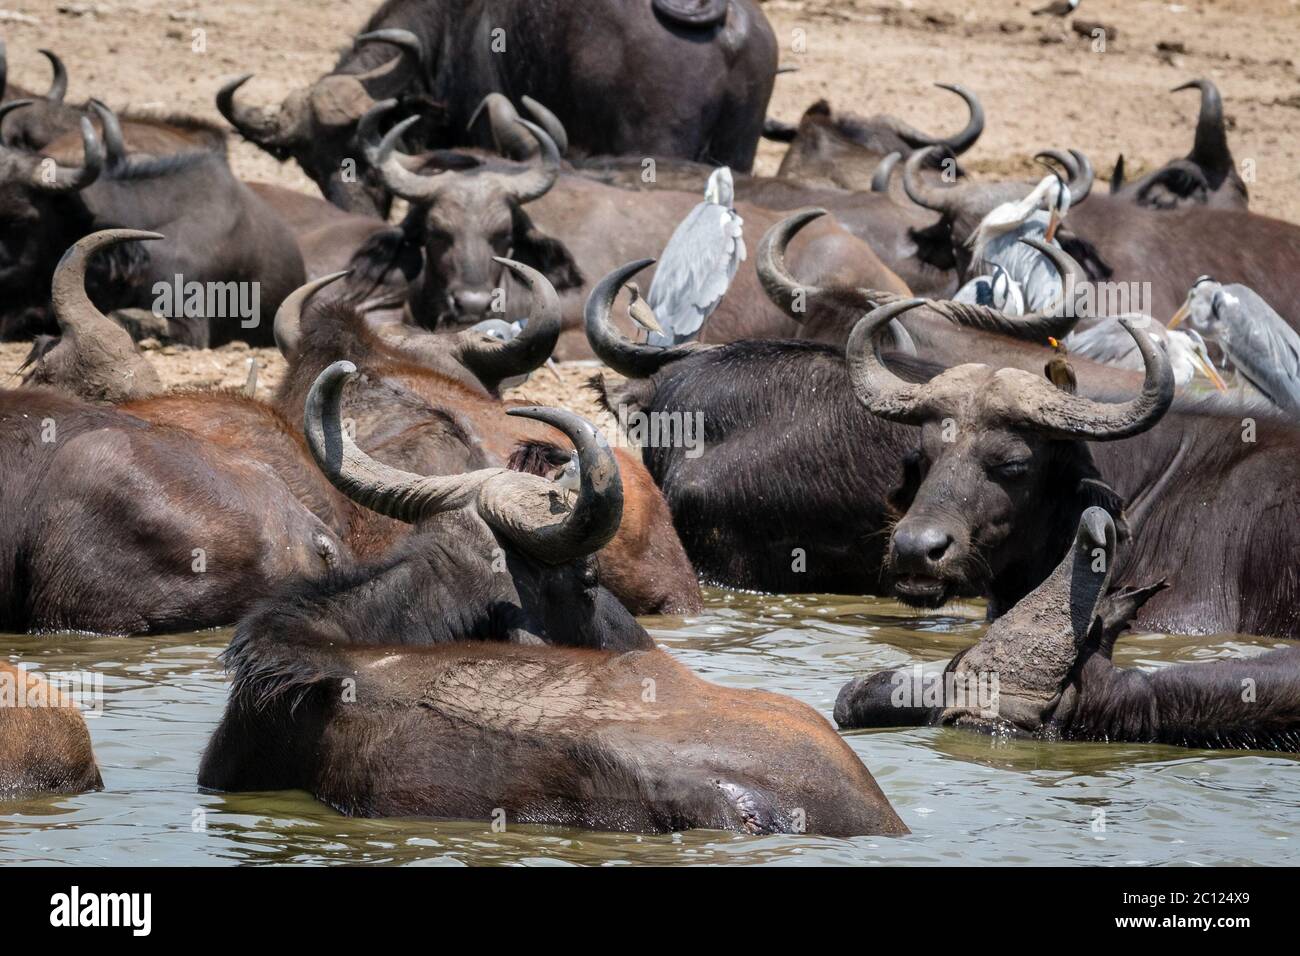 Un troupeau de buffles africains (Syncerus caffer) se rafraîchi au bord du chenal Kazinga dans le parc national de la Reine Elizabeth, en Ouganda, en Afrique de l'est Banque D'Images